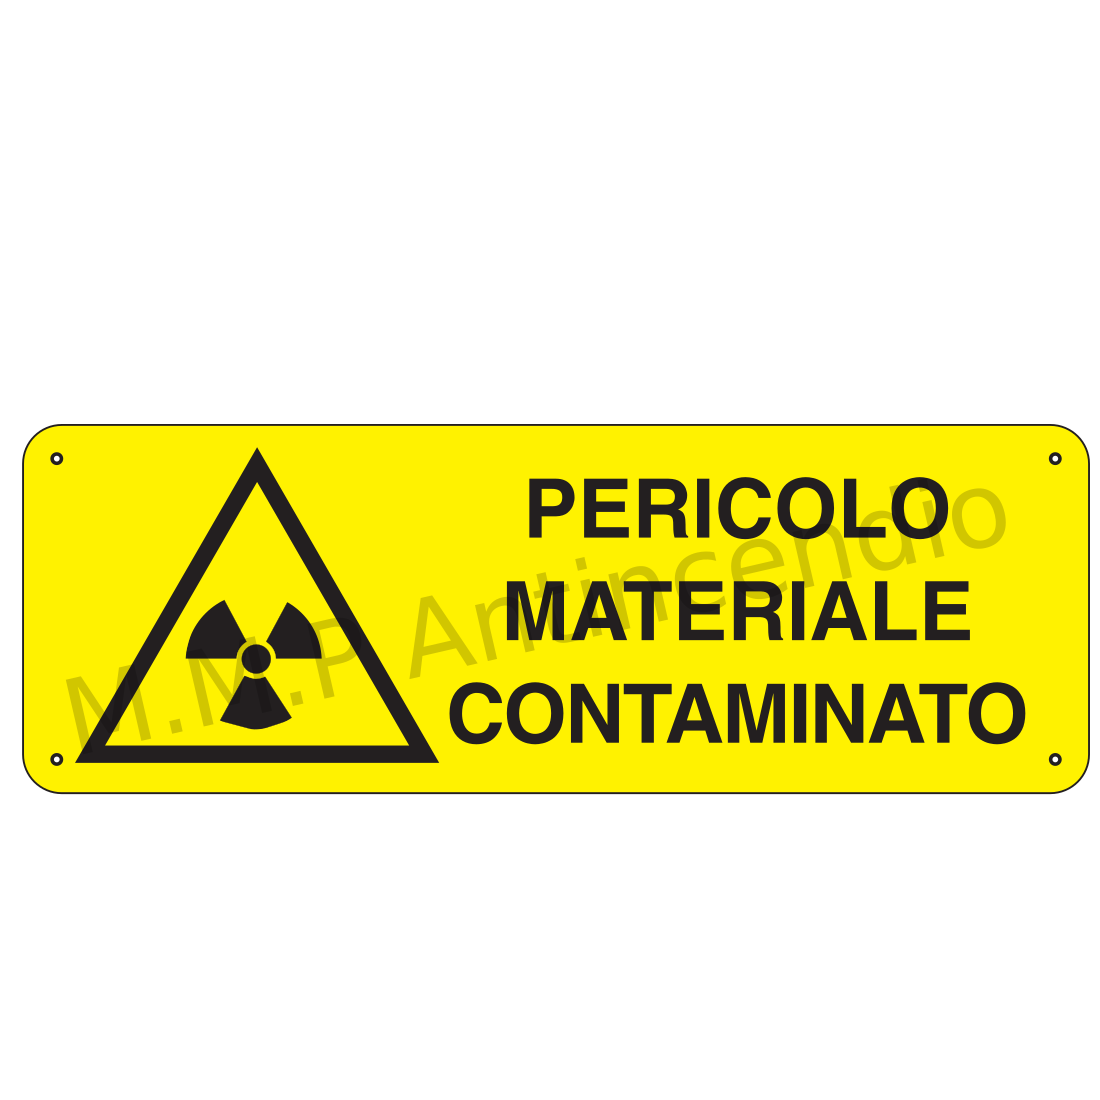 Pericolo materiale contaminato